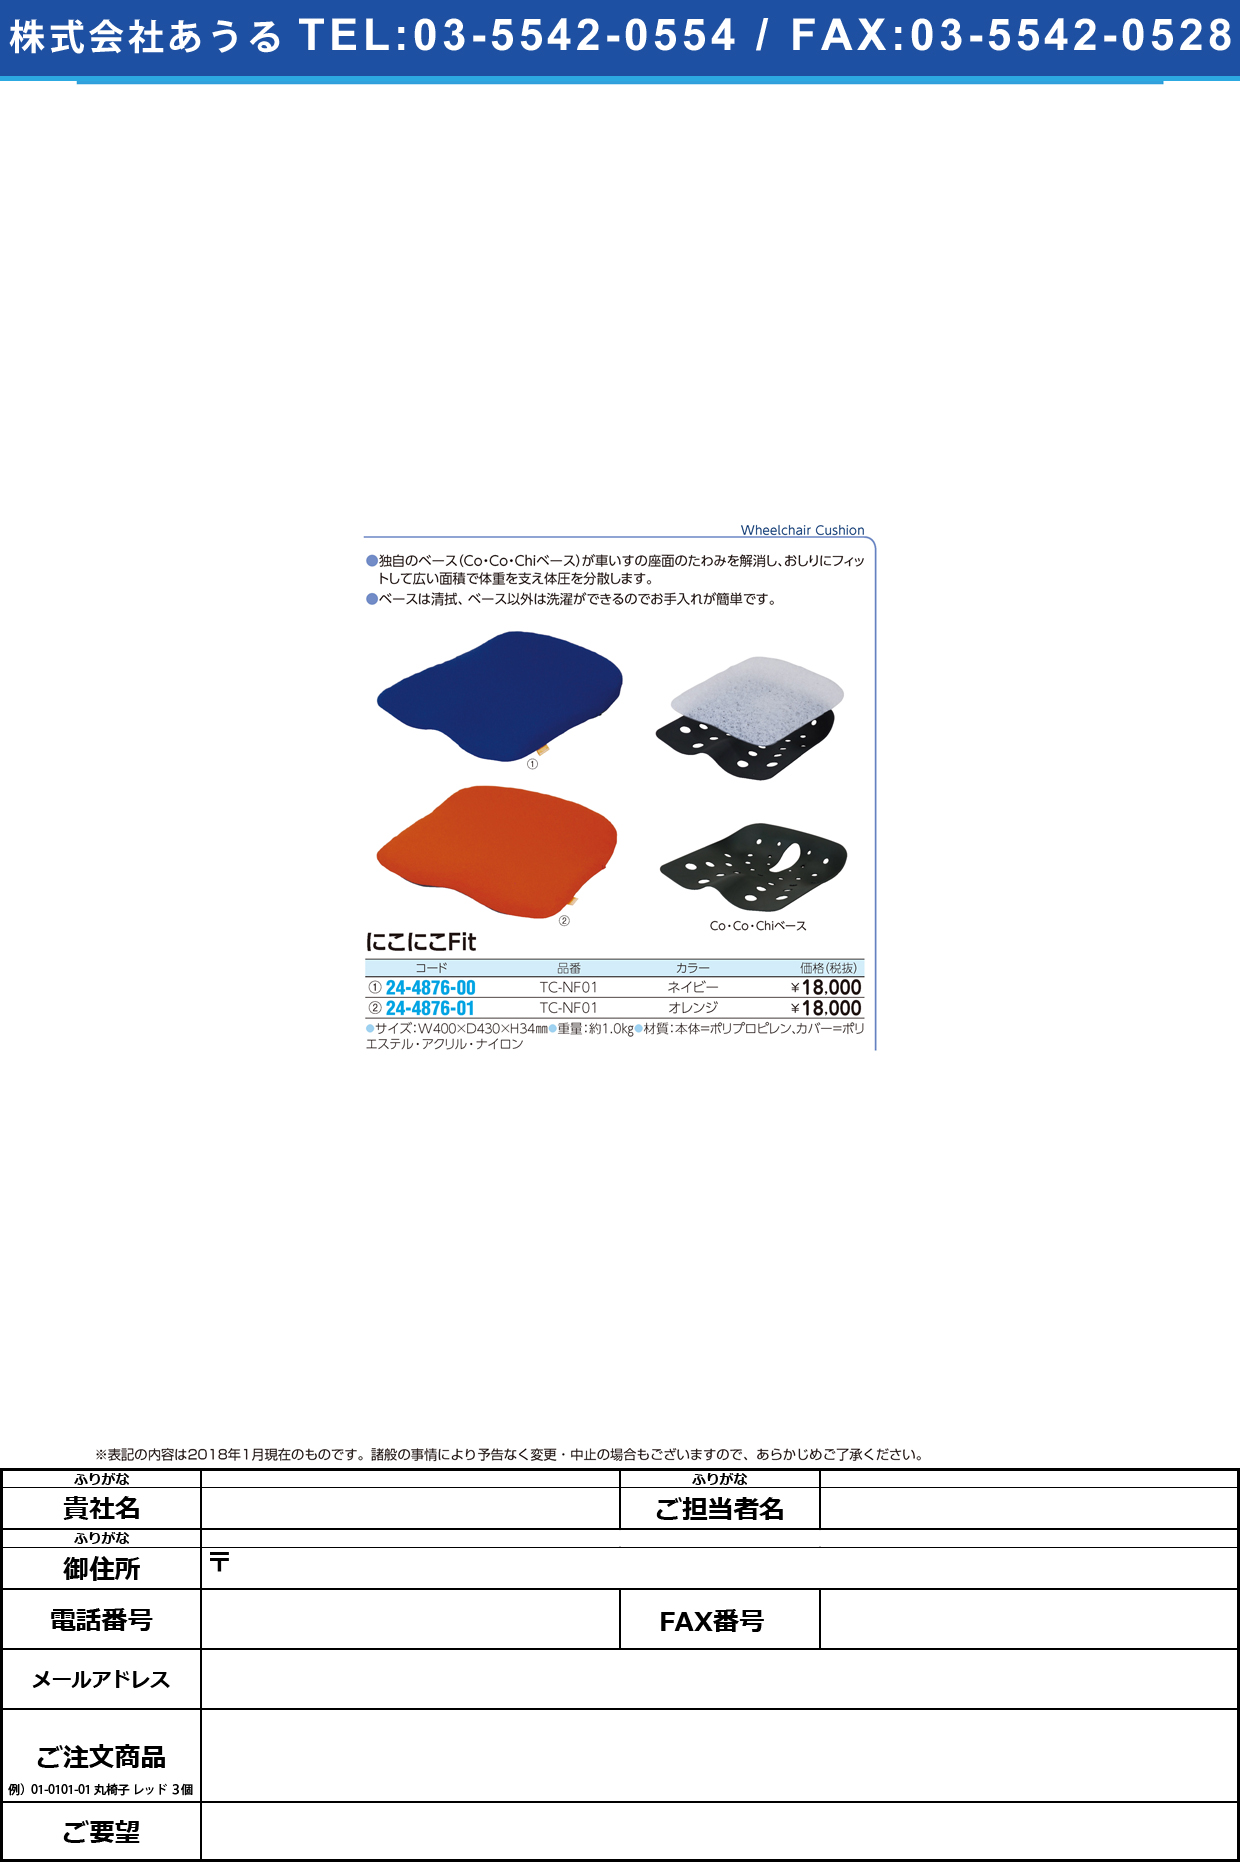 (24-4876-01)車いす用クッションにこにこＦｉｔ TC-NF01(ｵﾚﾝｼﾞ) ﾆｺﾆｺFIT(タカノ)【1個単位】【2018年カタログ商品】